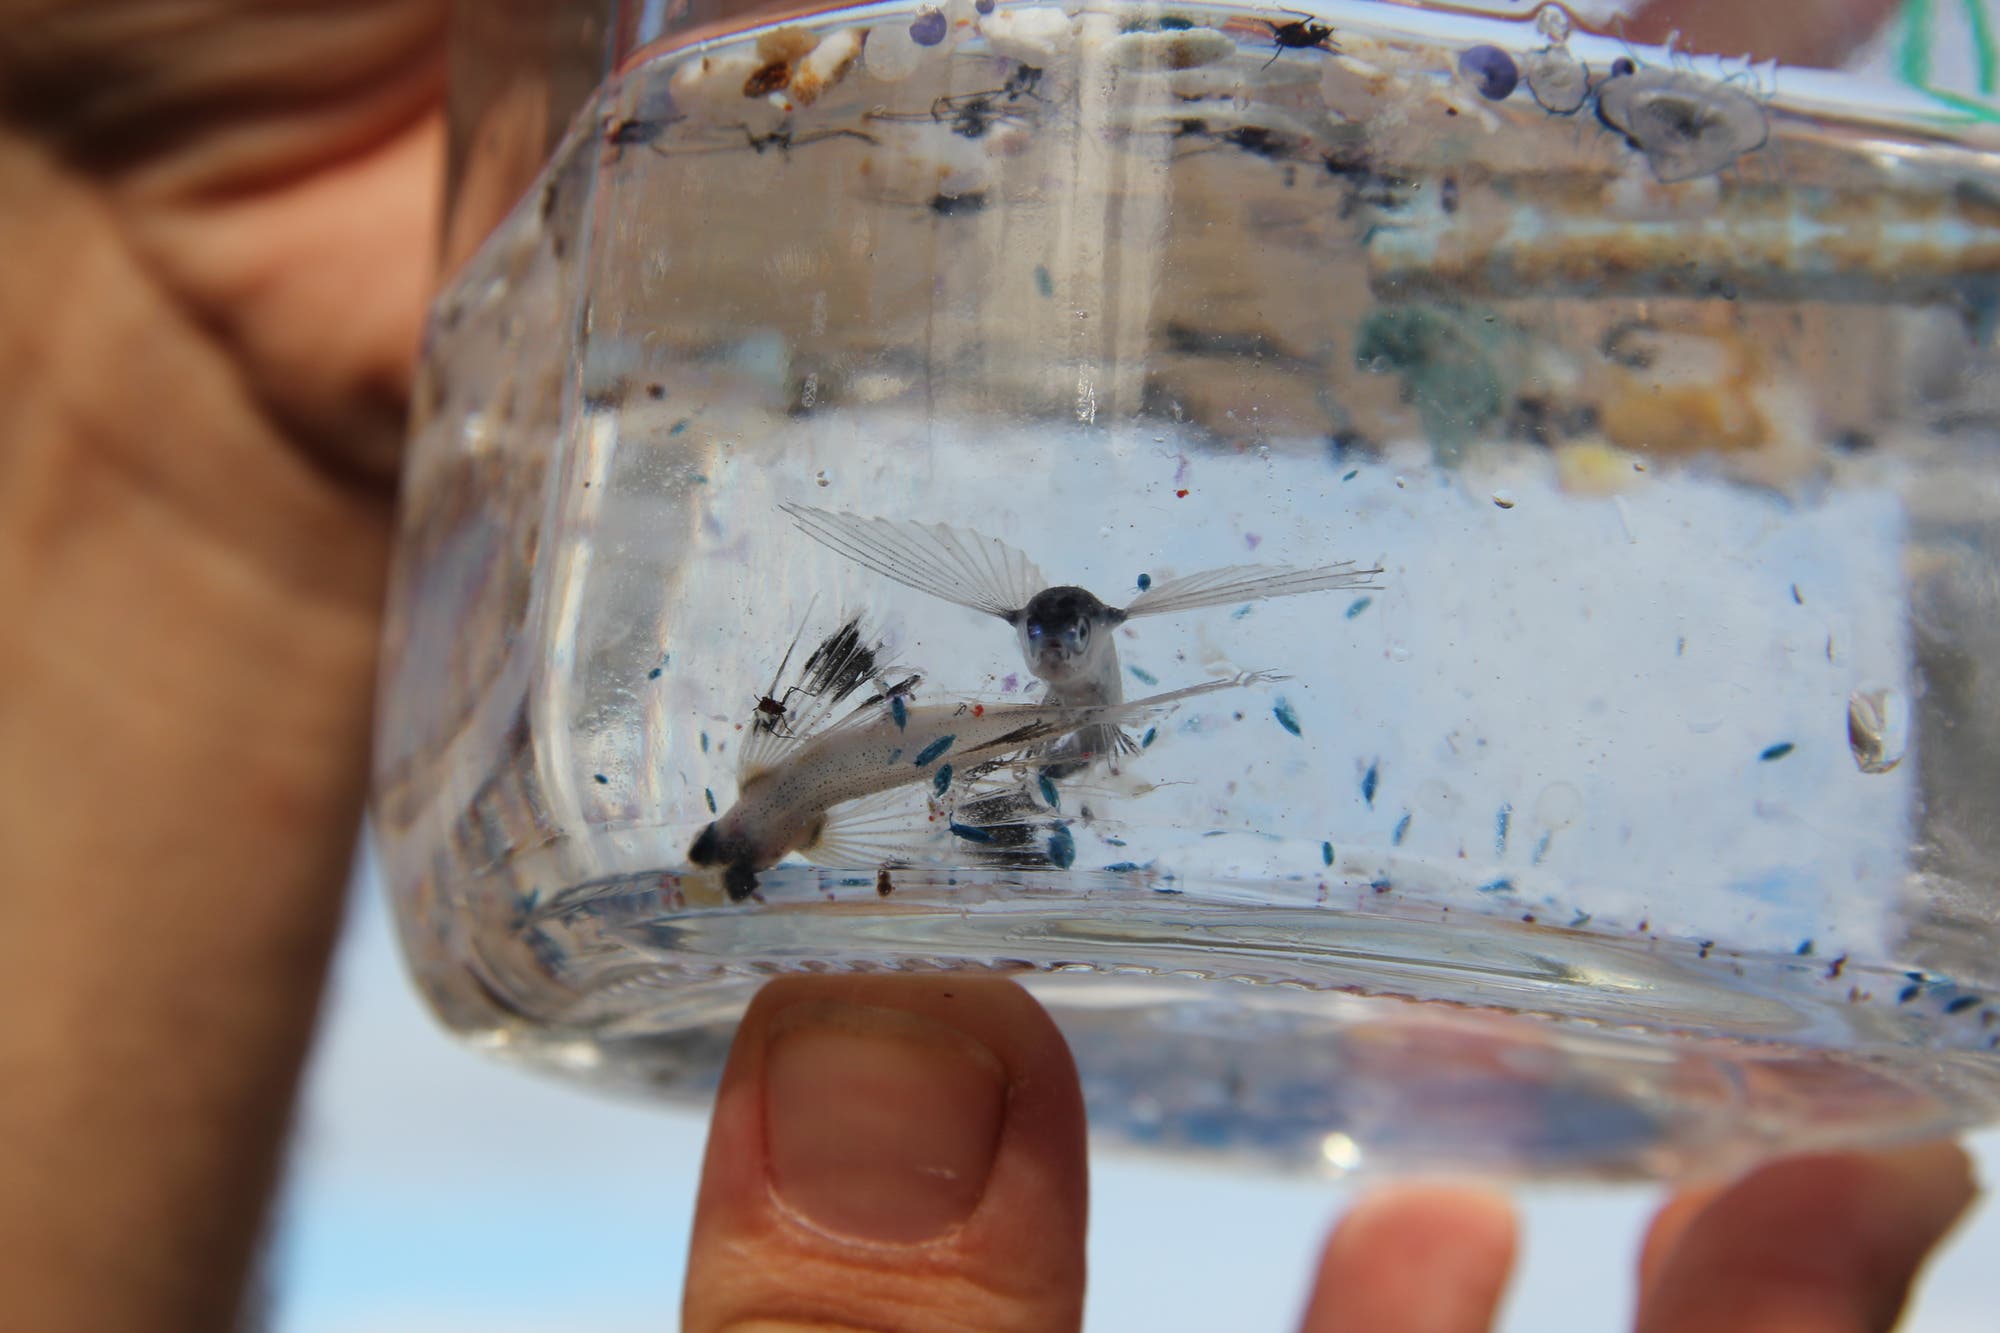 Zwei fliegende Fische sind in einem mit Wasser gefüllten Einmachglas und gucken den Betrachter an, außerdem finden sich Plastikteilchen im Wasser